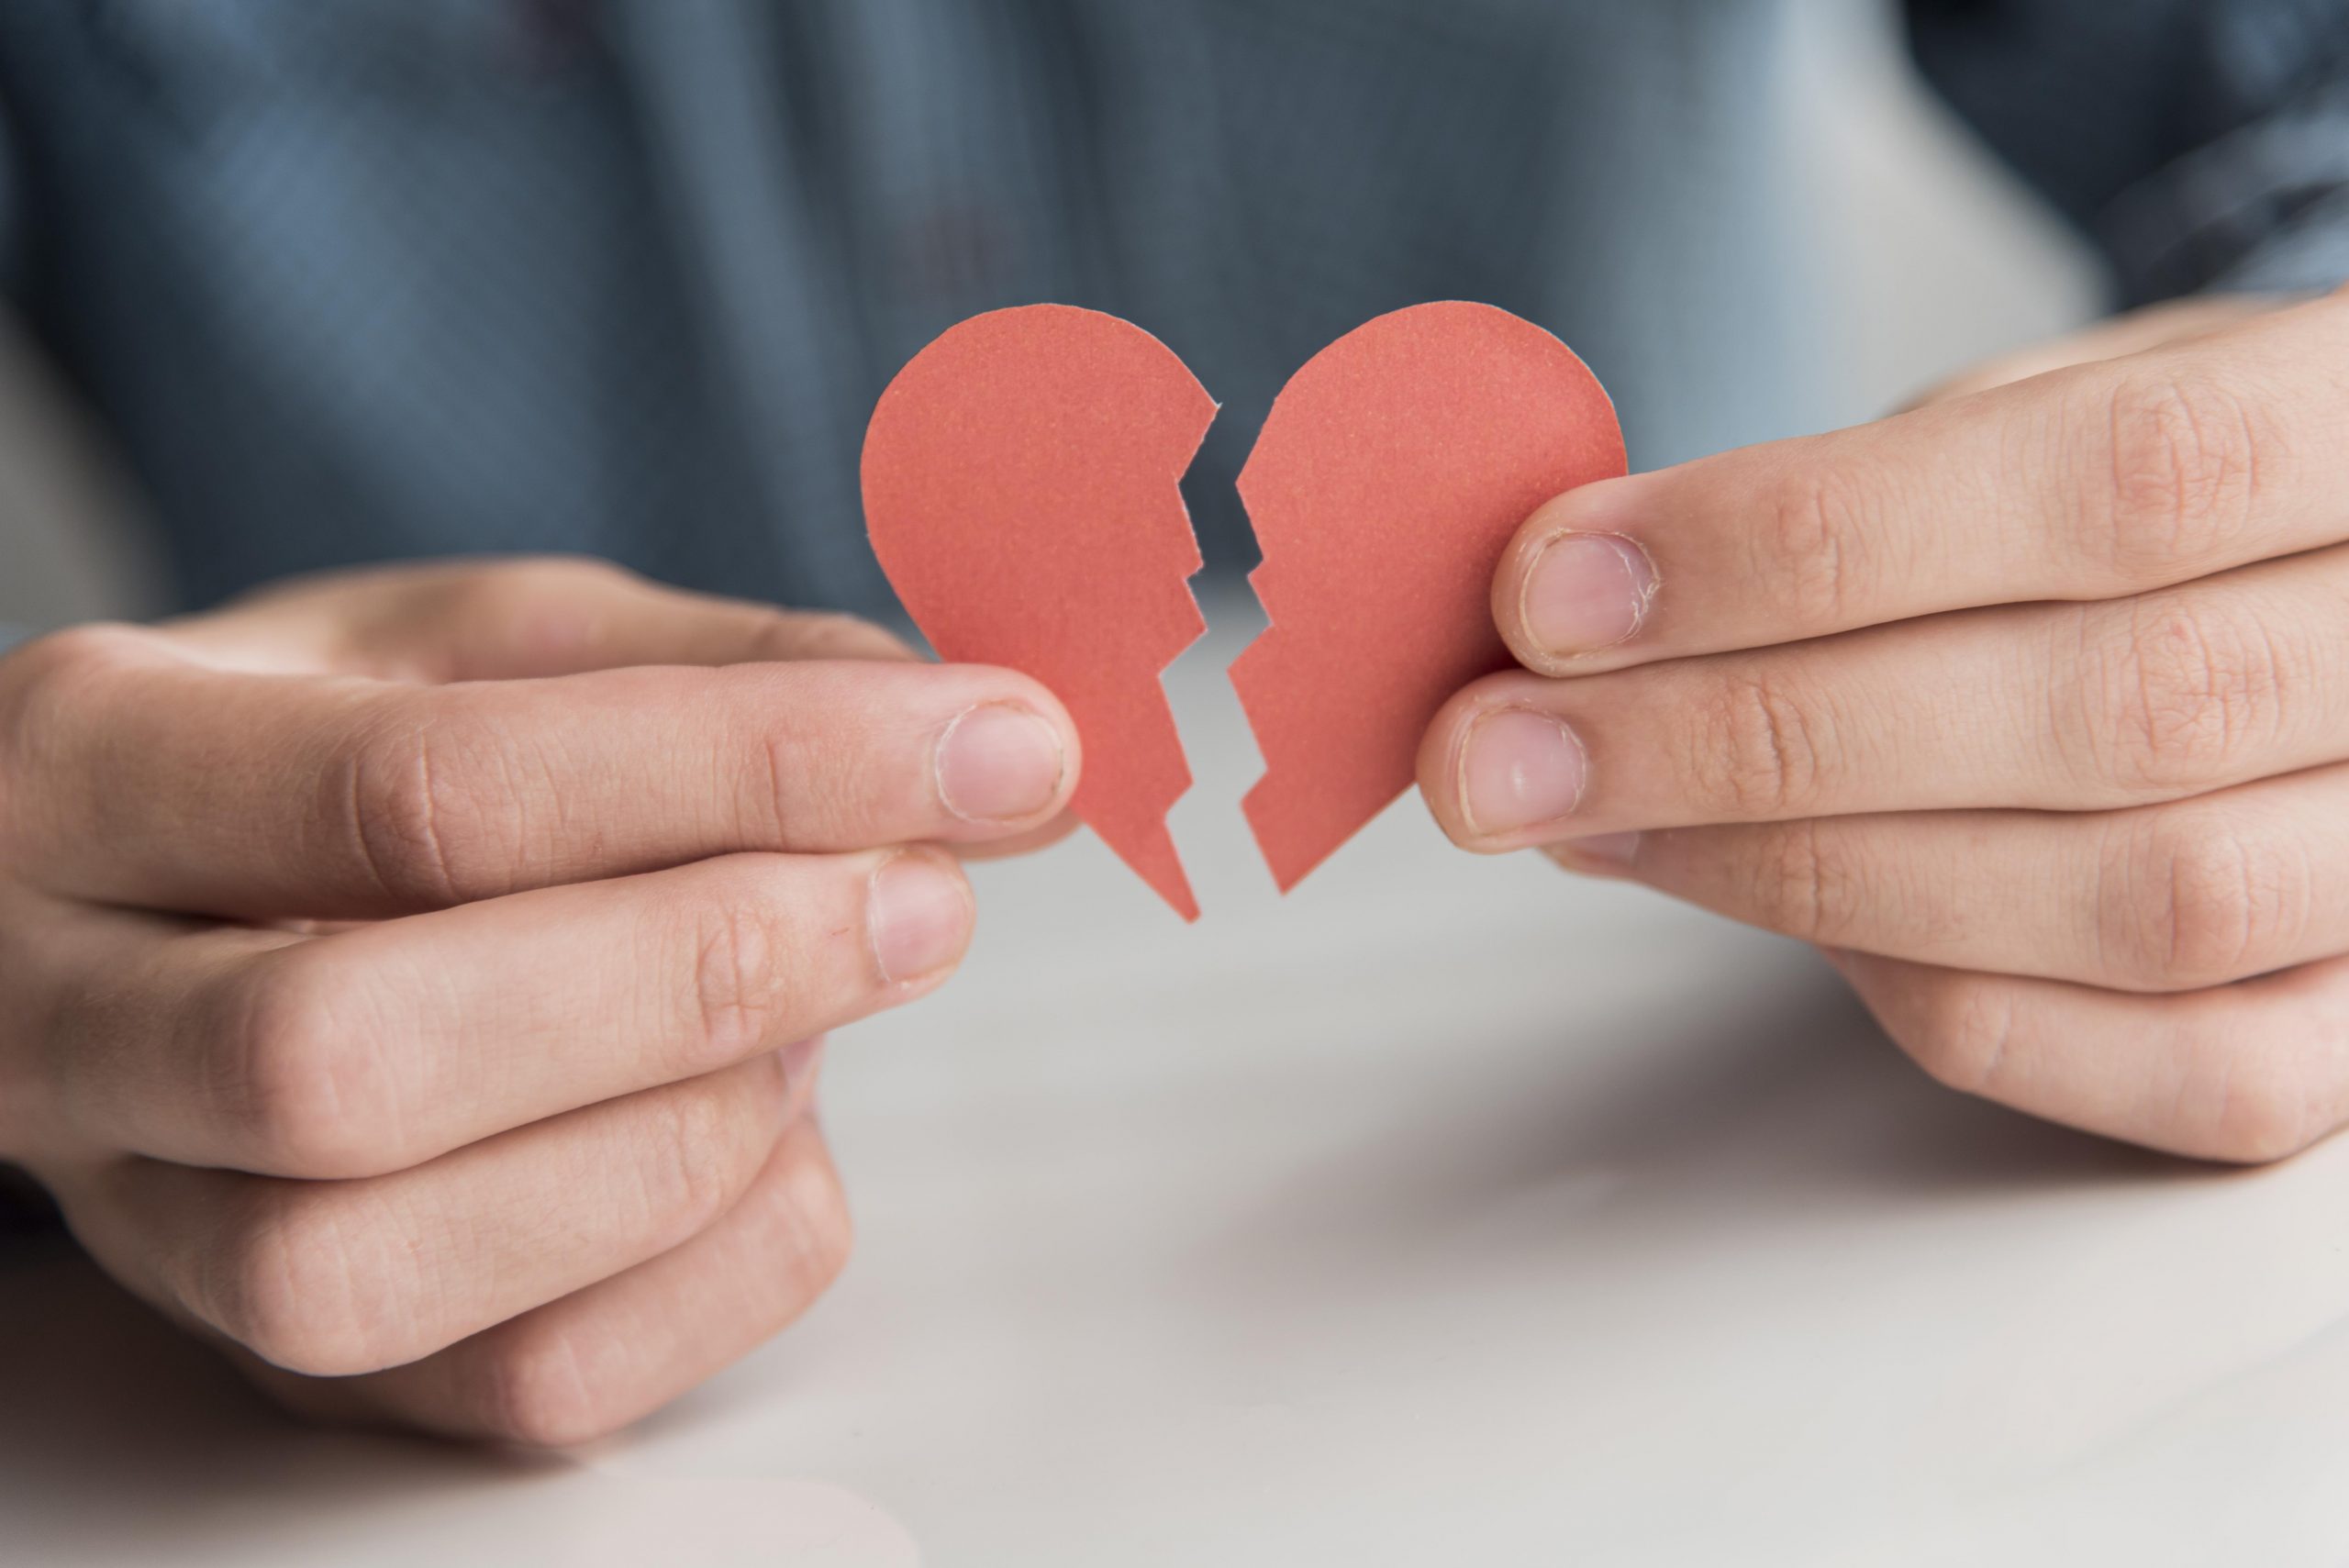 Boşanmanın getirdiği duygu karmaşası ile nasıl başa çıkabiliriz?